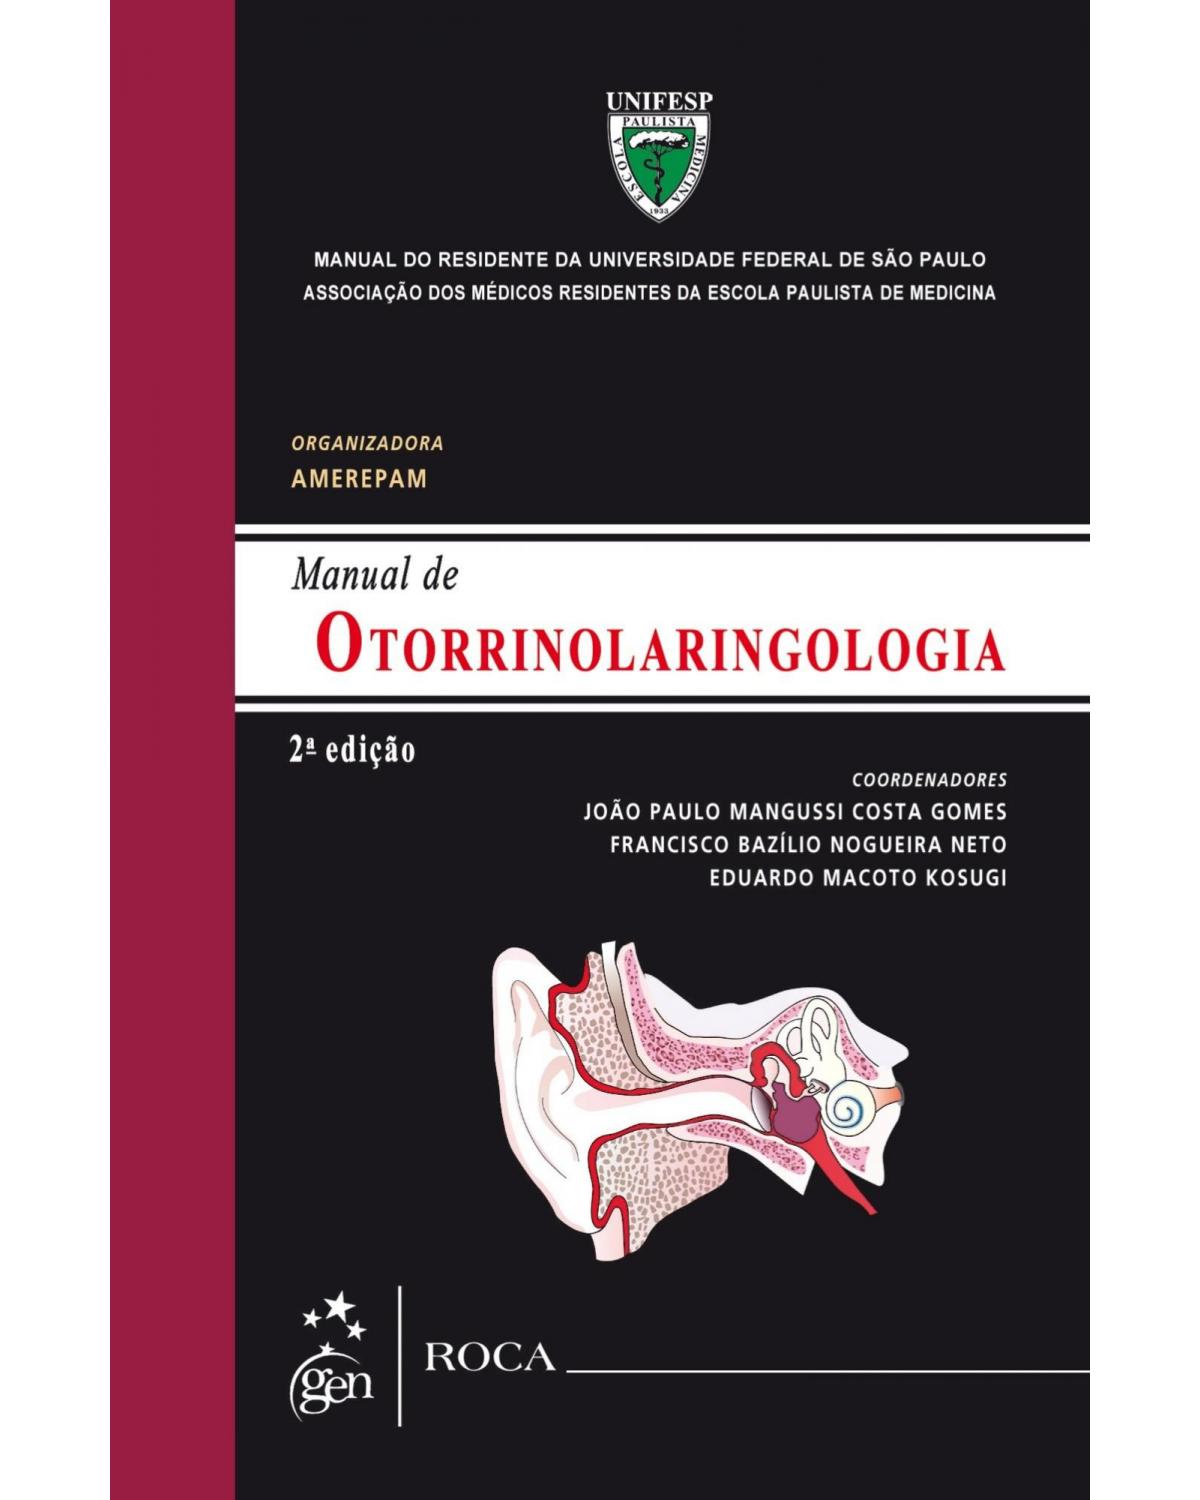 Manual de otorrinolaringologia - Manual do residente da Universidade Federal de São Paulo (UNIFESP) - 2ª Edição | 2015